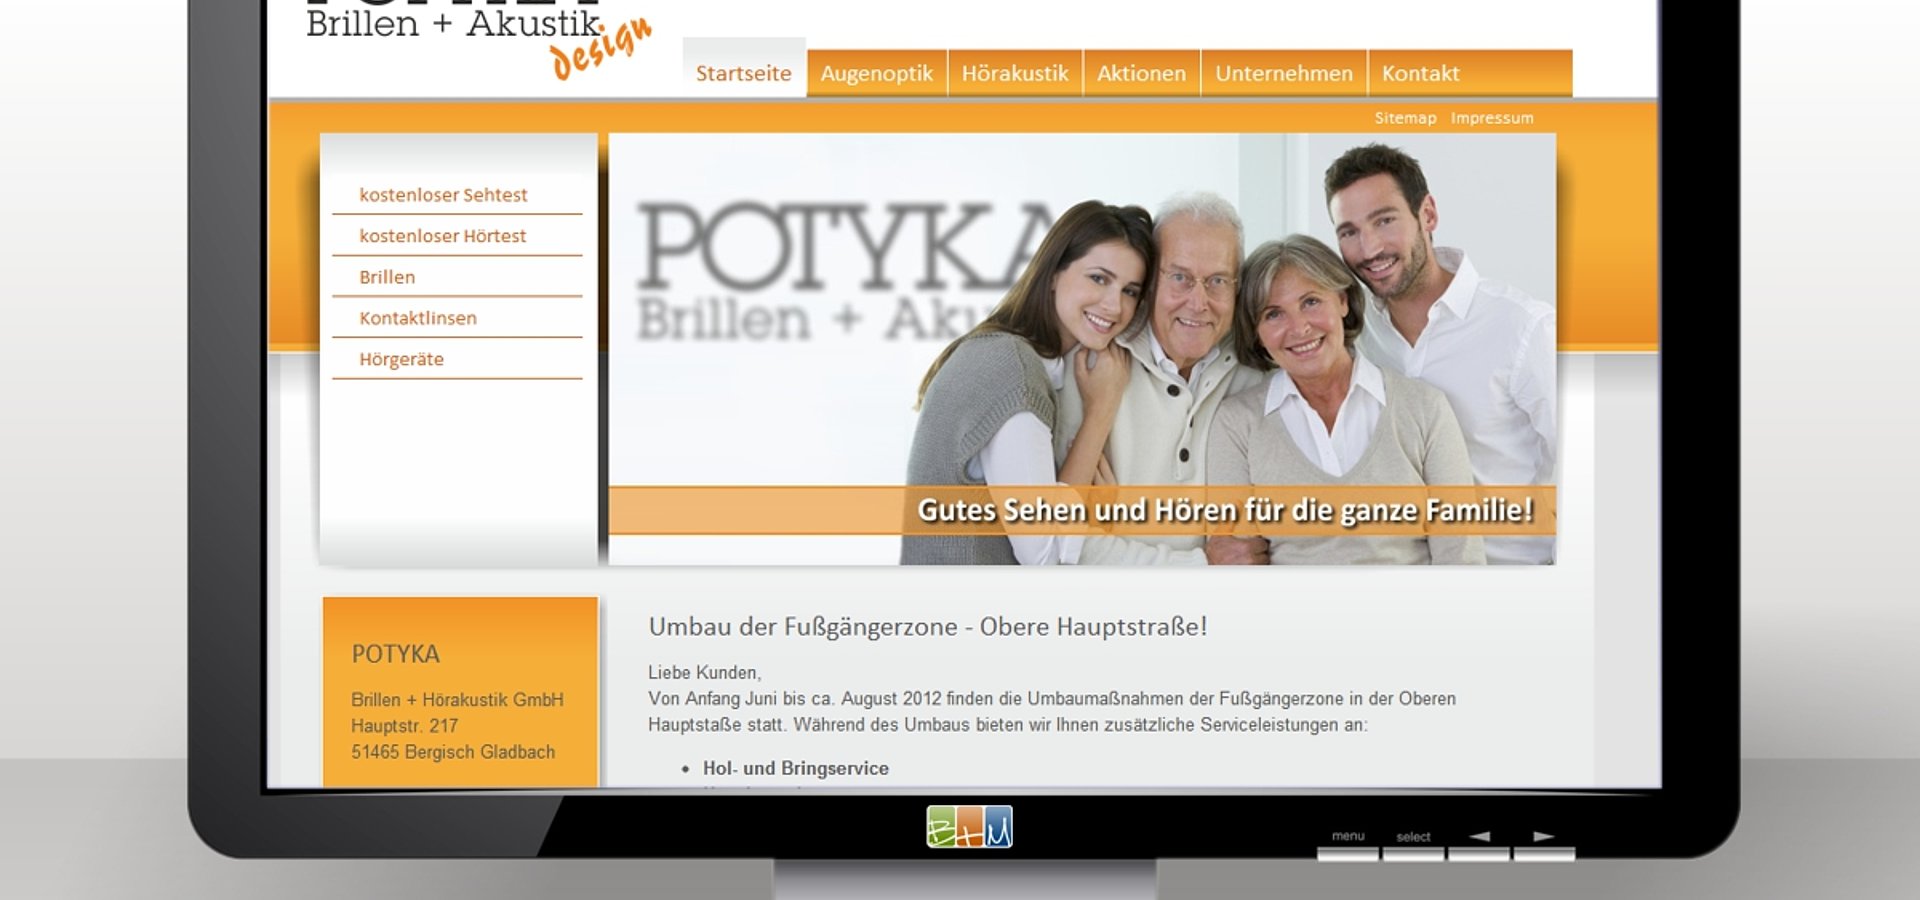 Contentproduktion: Relaunch Website für Brillen + Akustik  POTYKA, Bergisch Gladbach / 2011